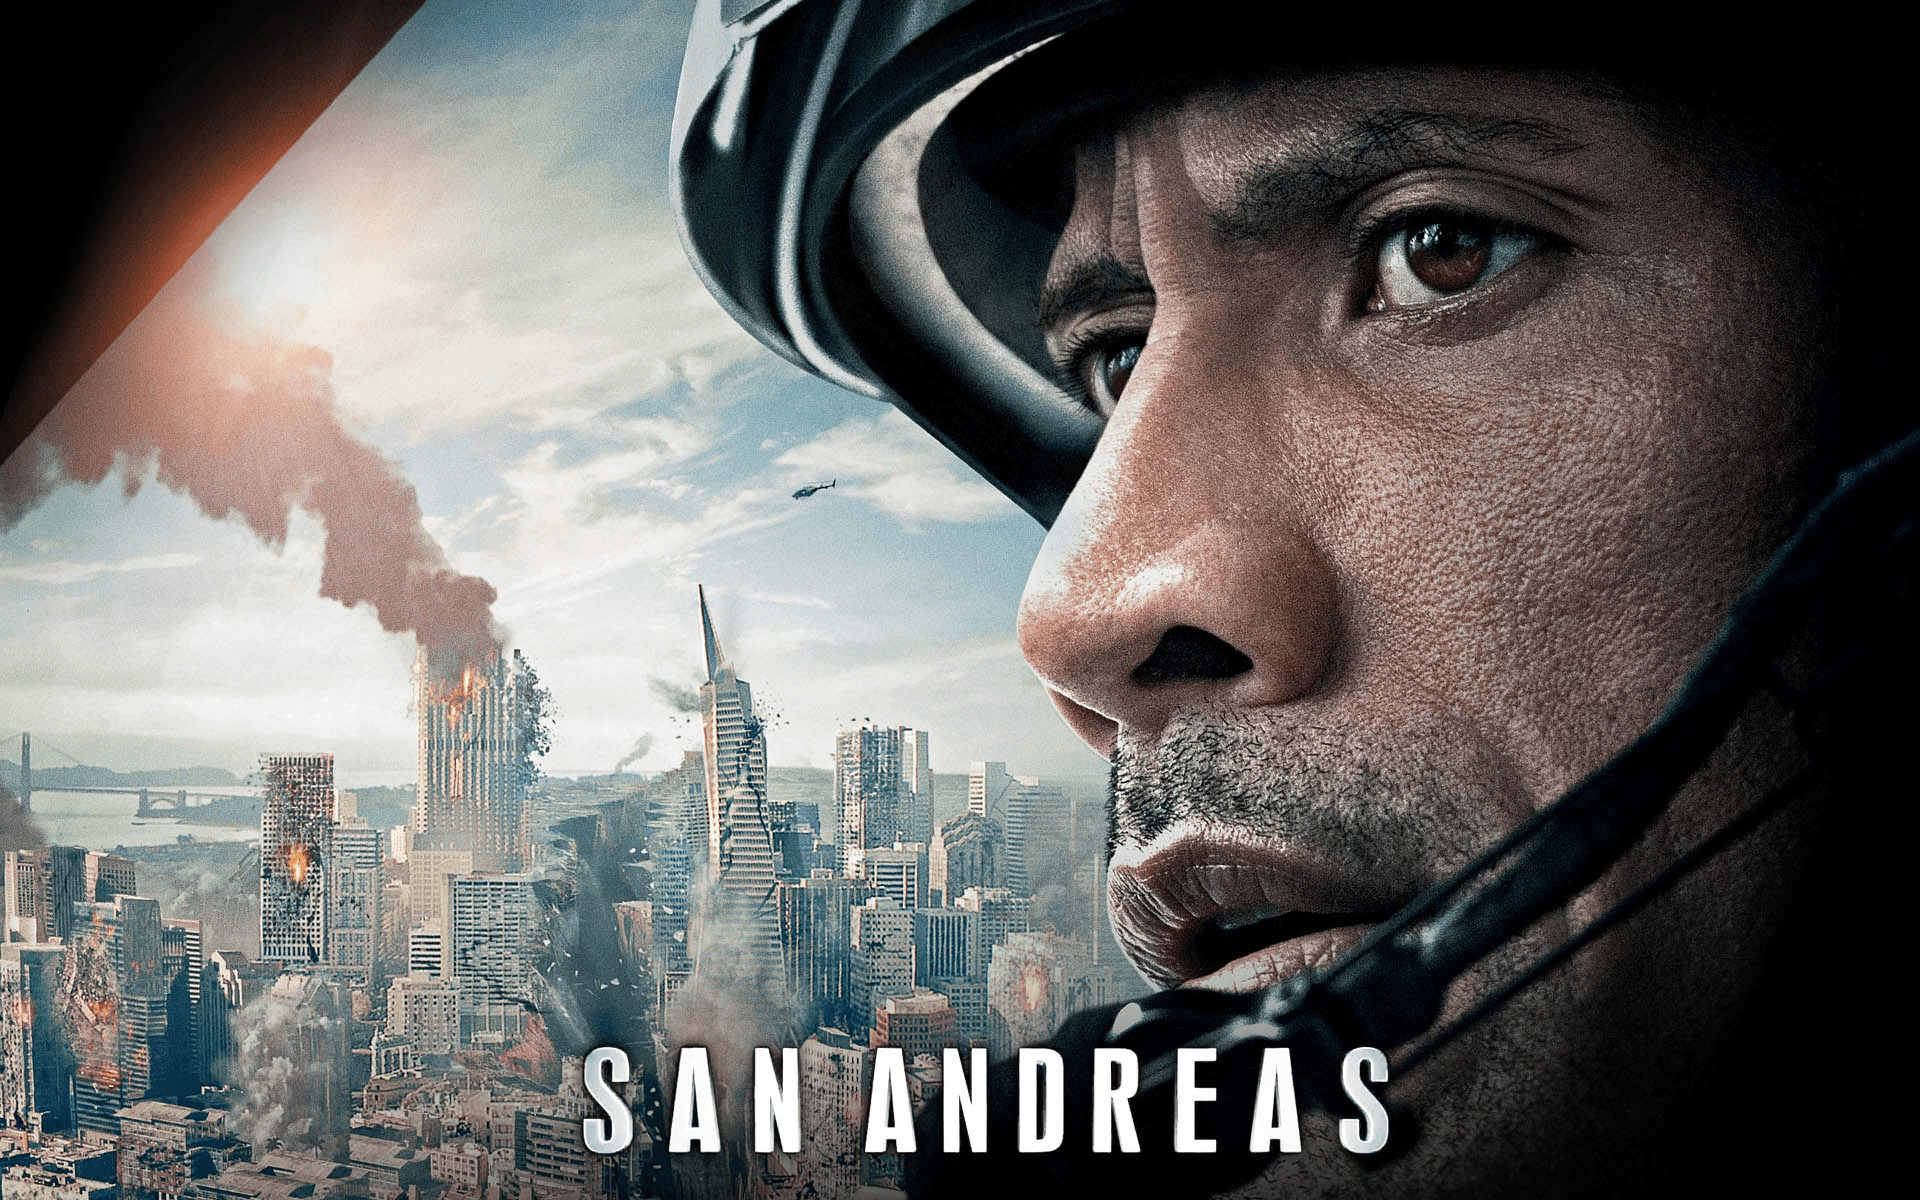 San Andreas poster